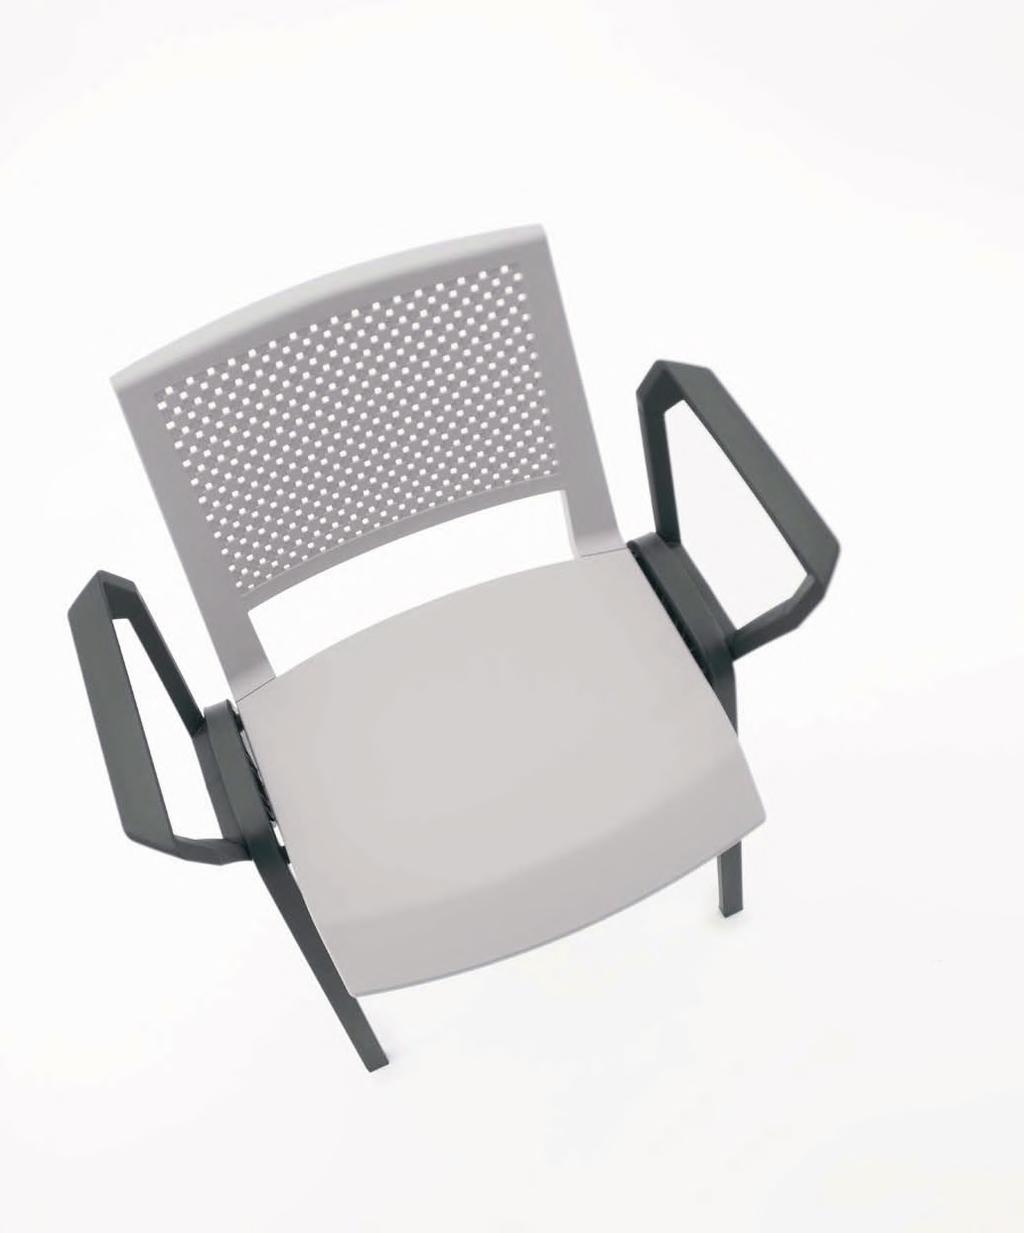 Prima Sedia impilabile multiuso con: - con e senza braccioli o braccioli con tavoletta - versioni con scocca in polipropilene - versioni con sedile imbottito - versioni con sedile e schienali